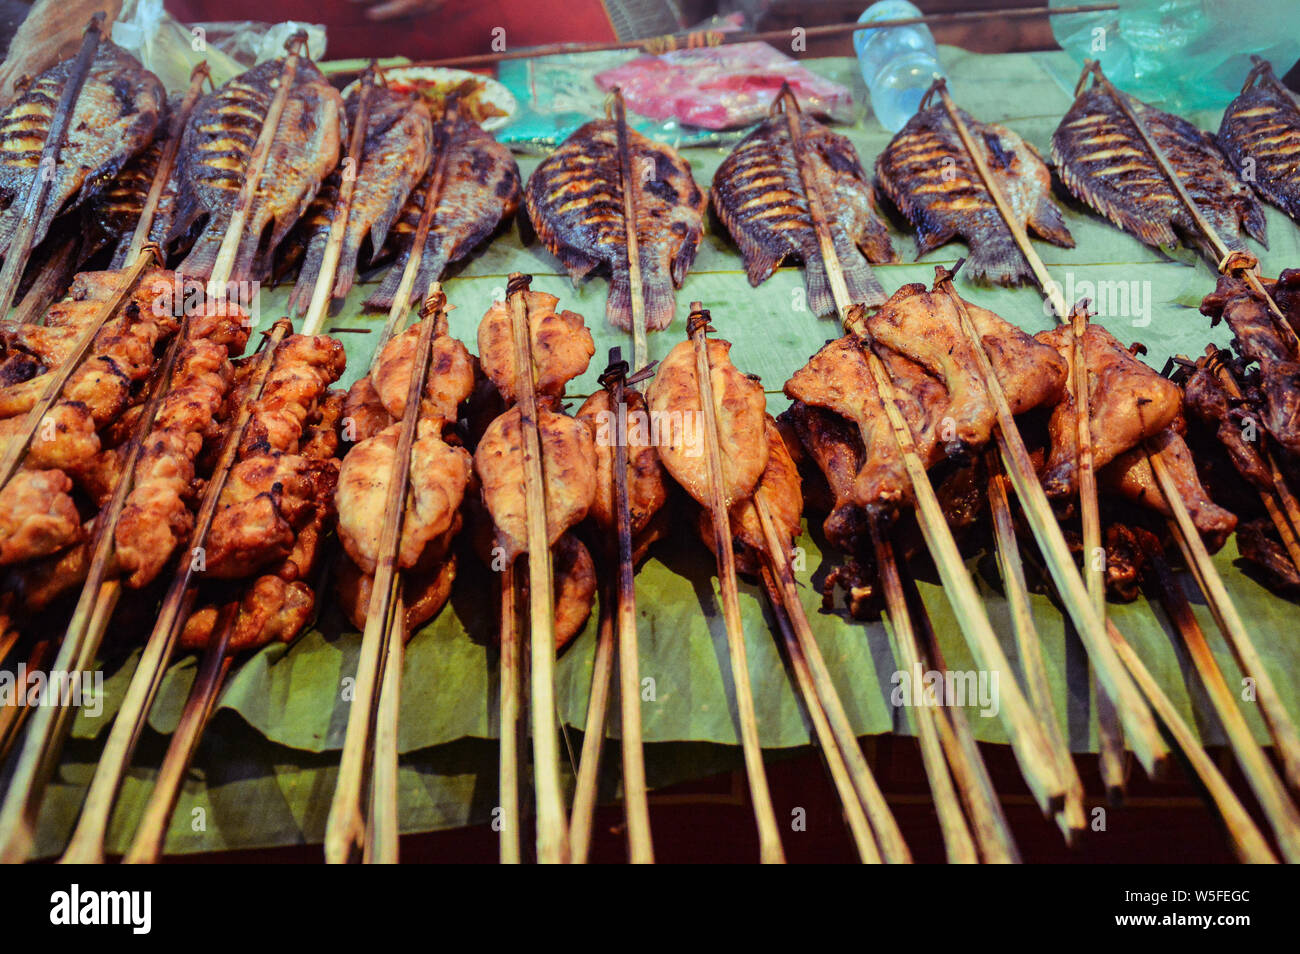 Die berühmten Luang Prabang morgens auf dem Markt von Laos zur Schau stellt authentische lokale Laotischen essen und exotische Gerichte Stockfoto